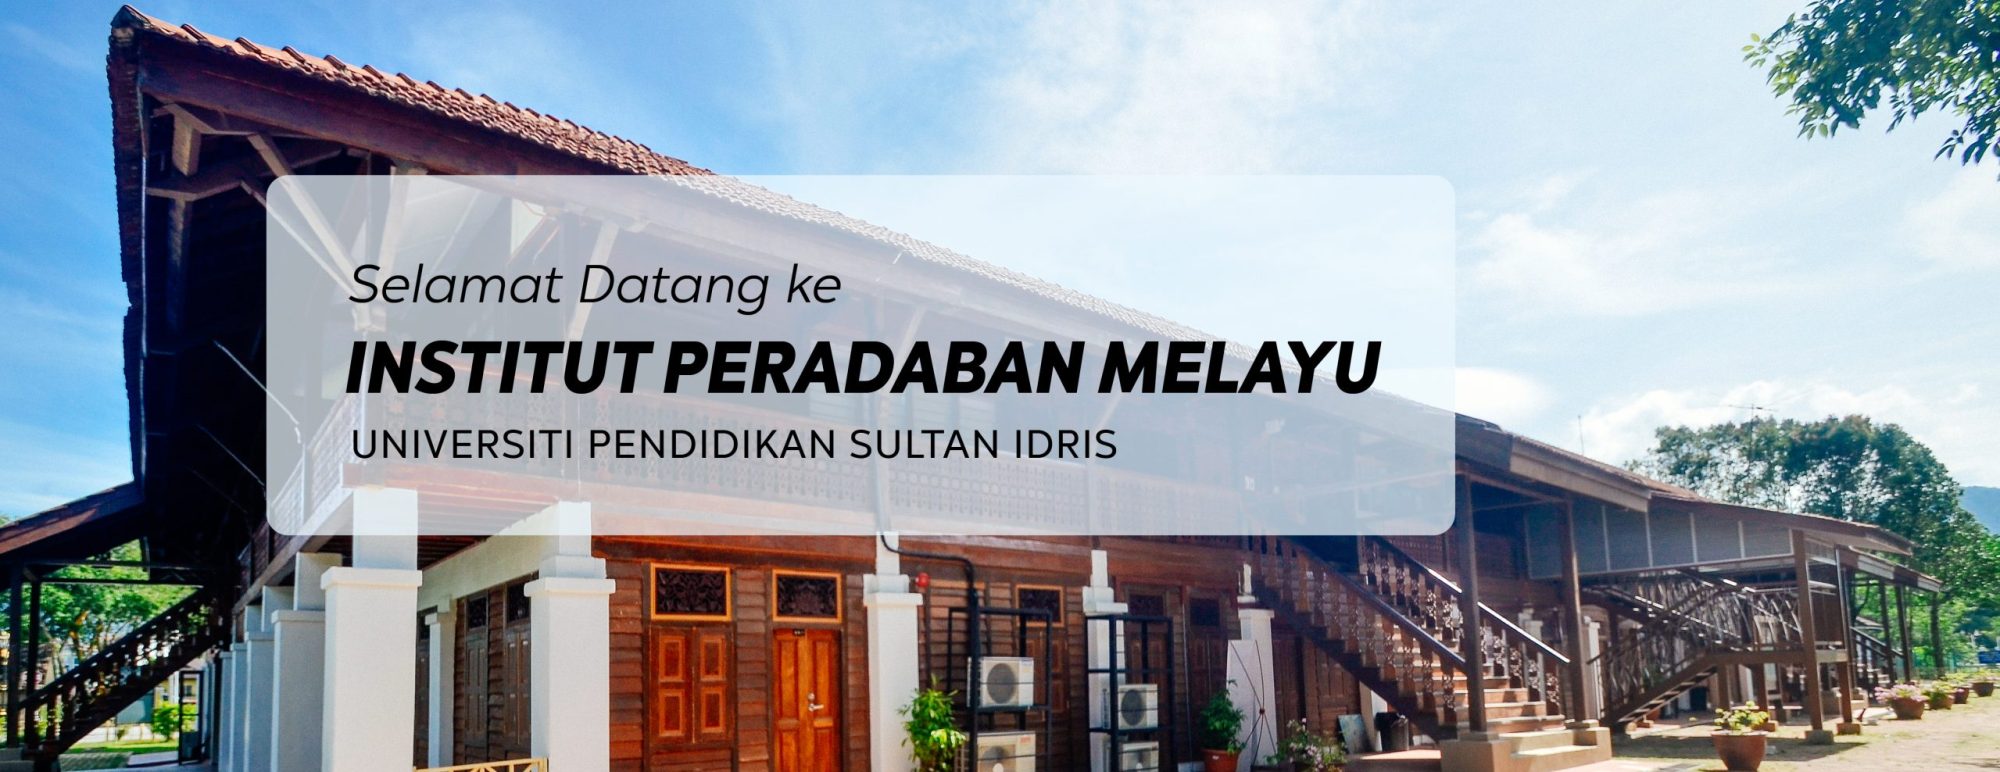 Institut Peradaban Melayu